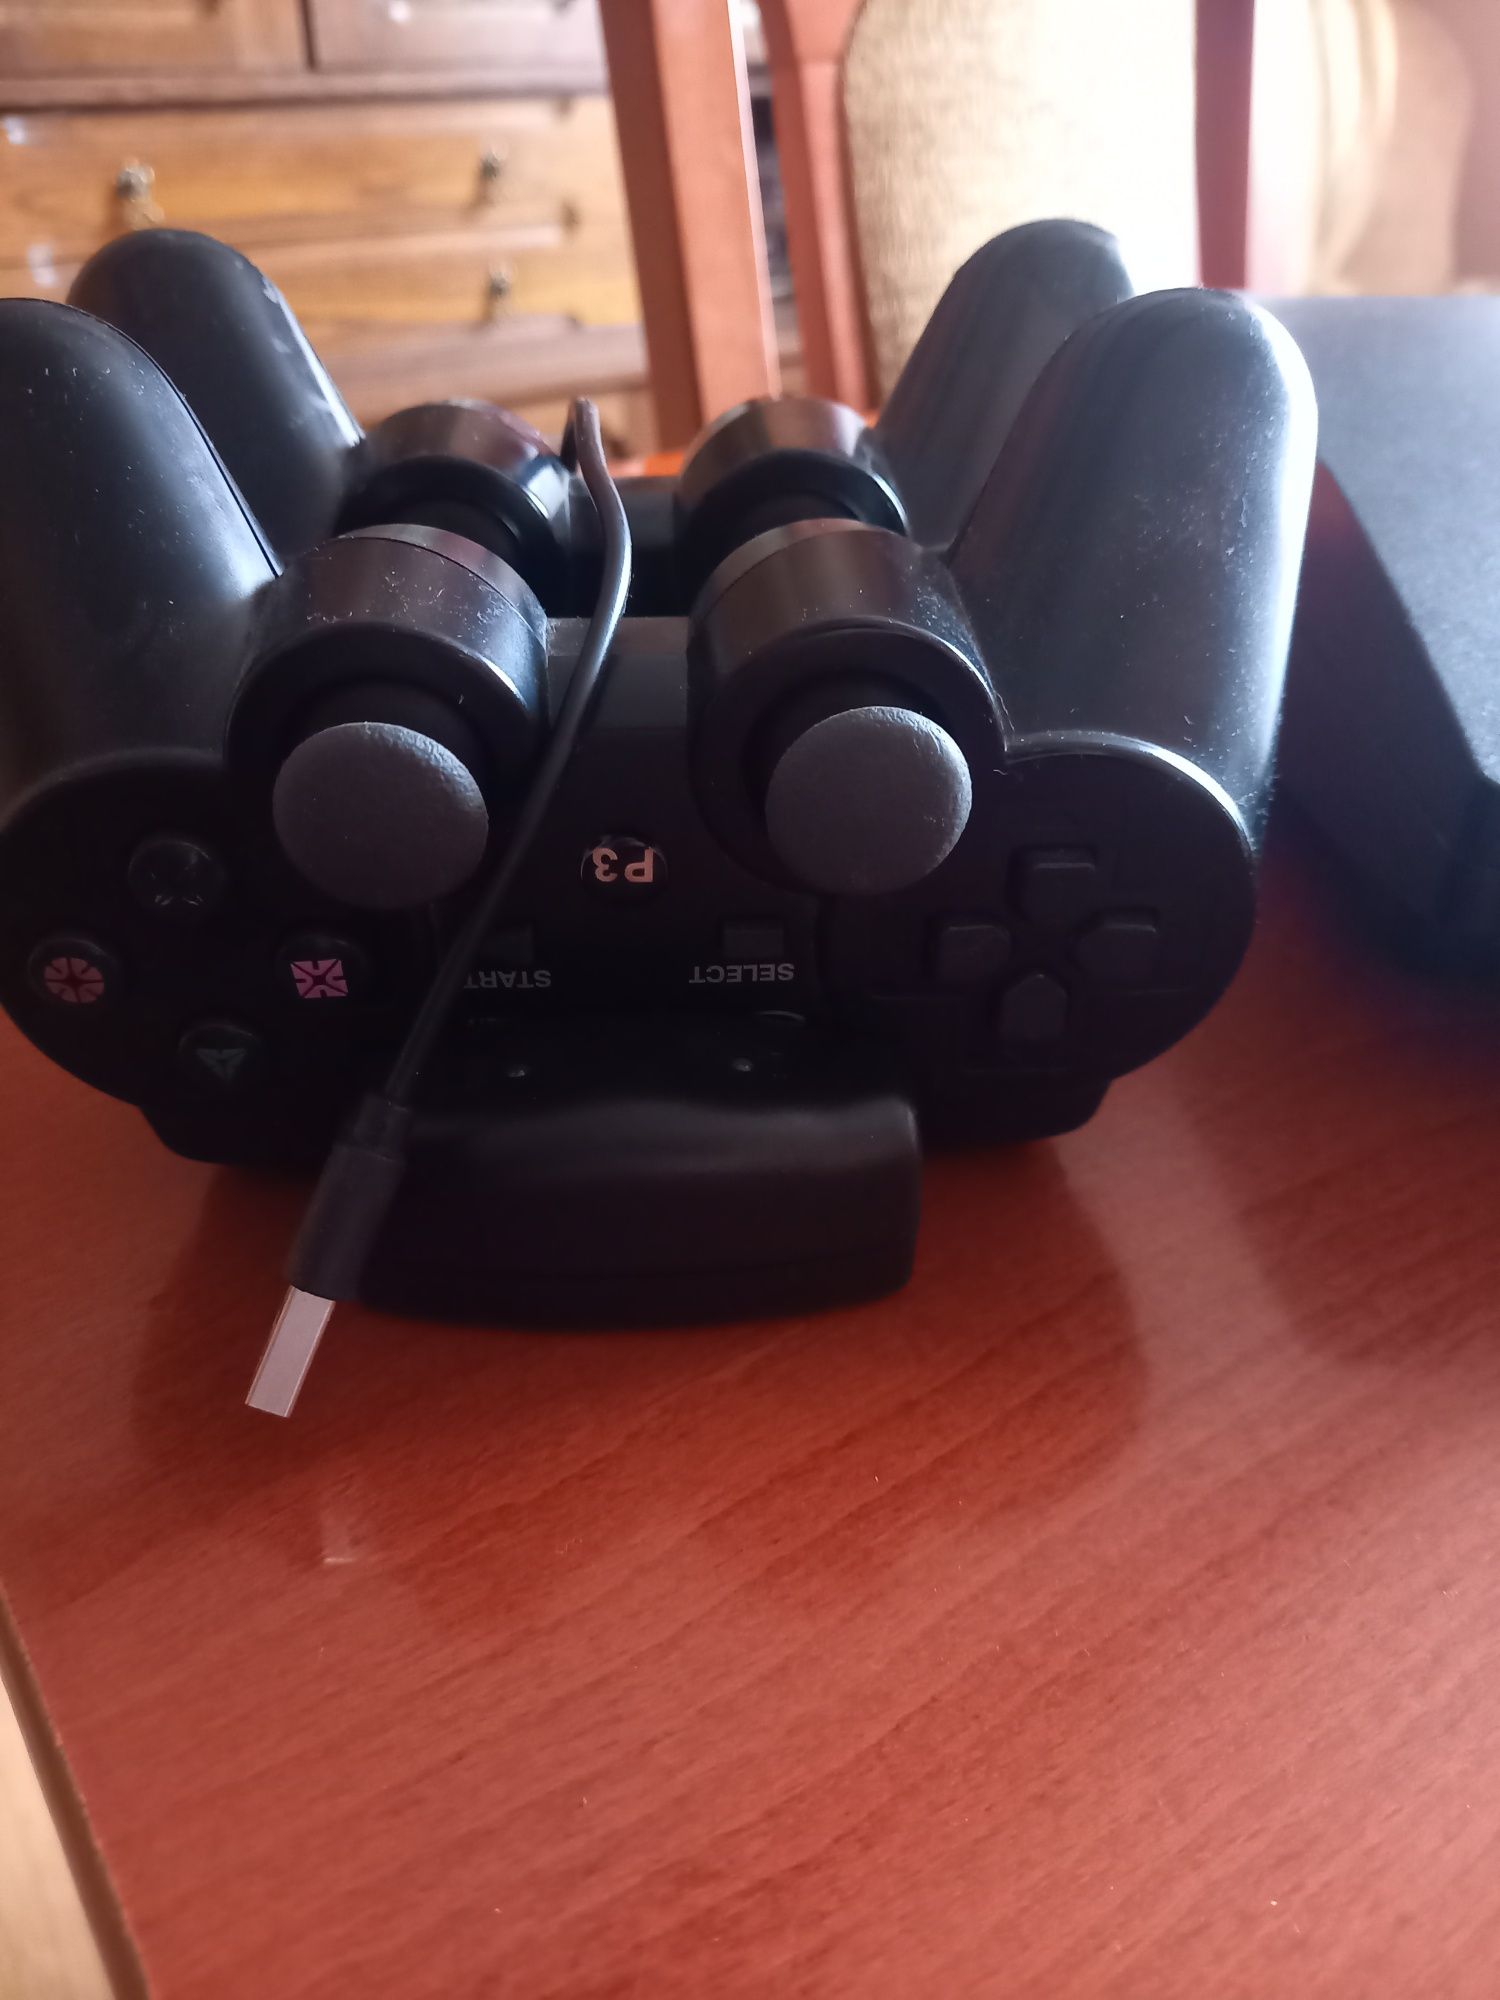 PS3 komplet 2 pady oryginał stacja ładujaca i zestaw gier Fifa i minec